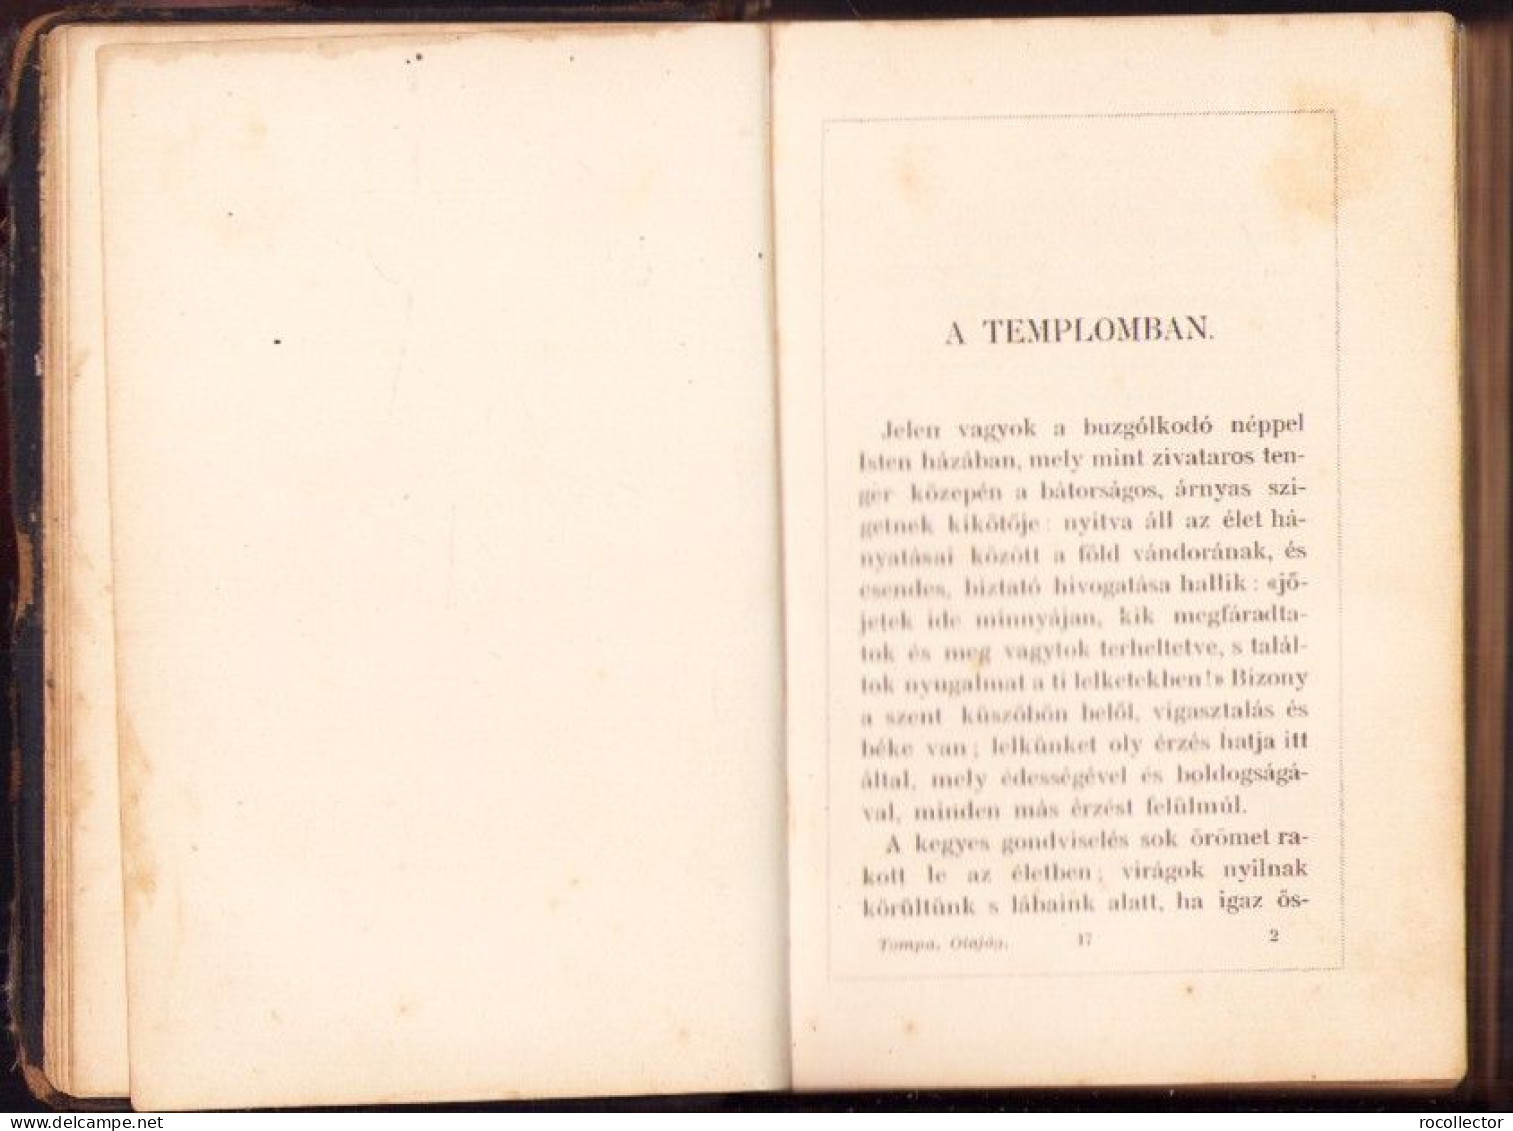 Olajág Elmélkedések, fohászok és imák Hölgyek számára olvasó- és imakönyvül irta Tompa Mihaly, 1903 C4350N